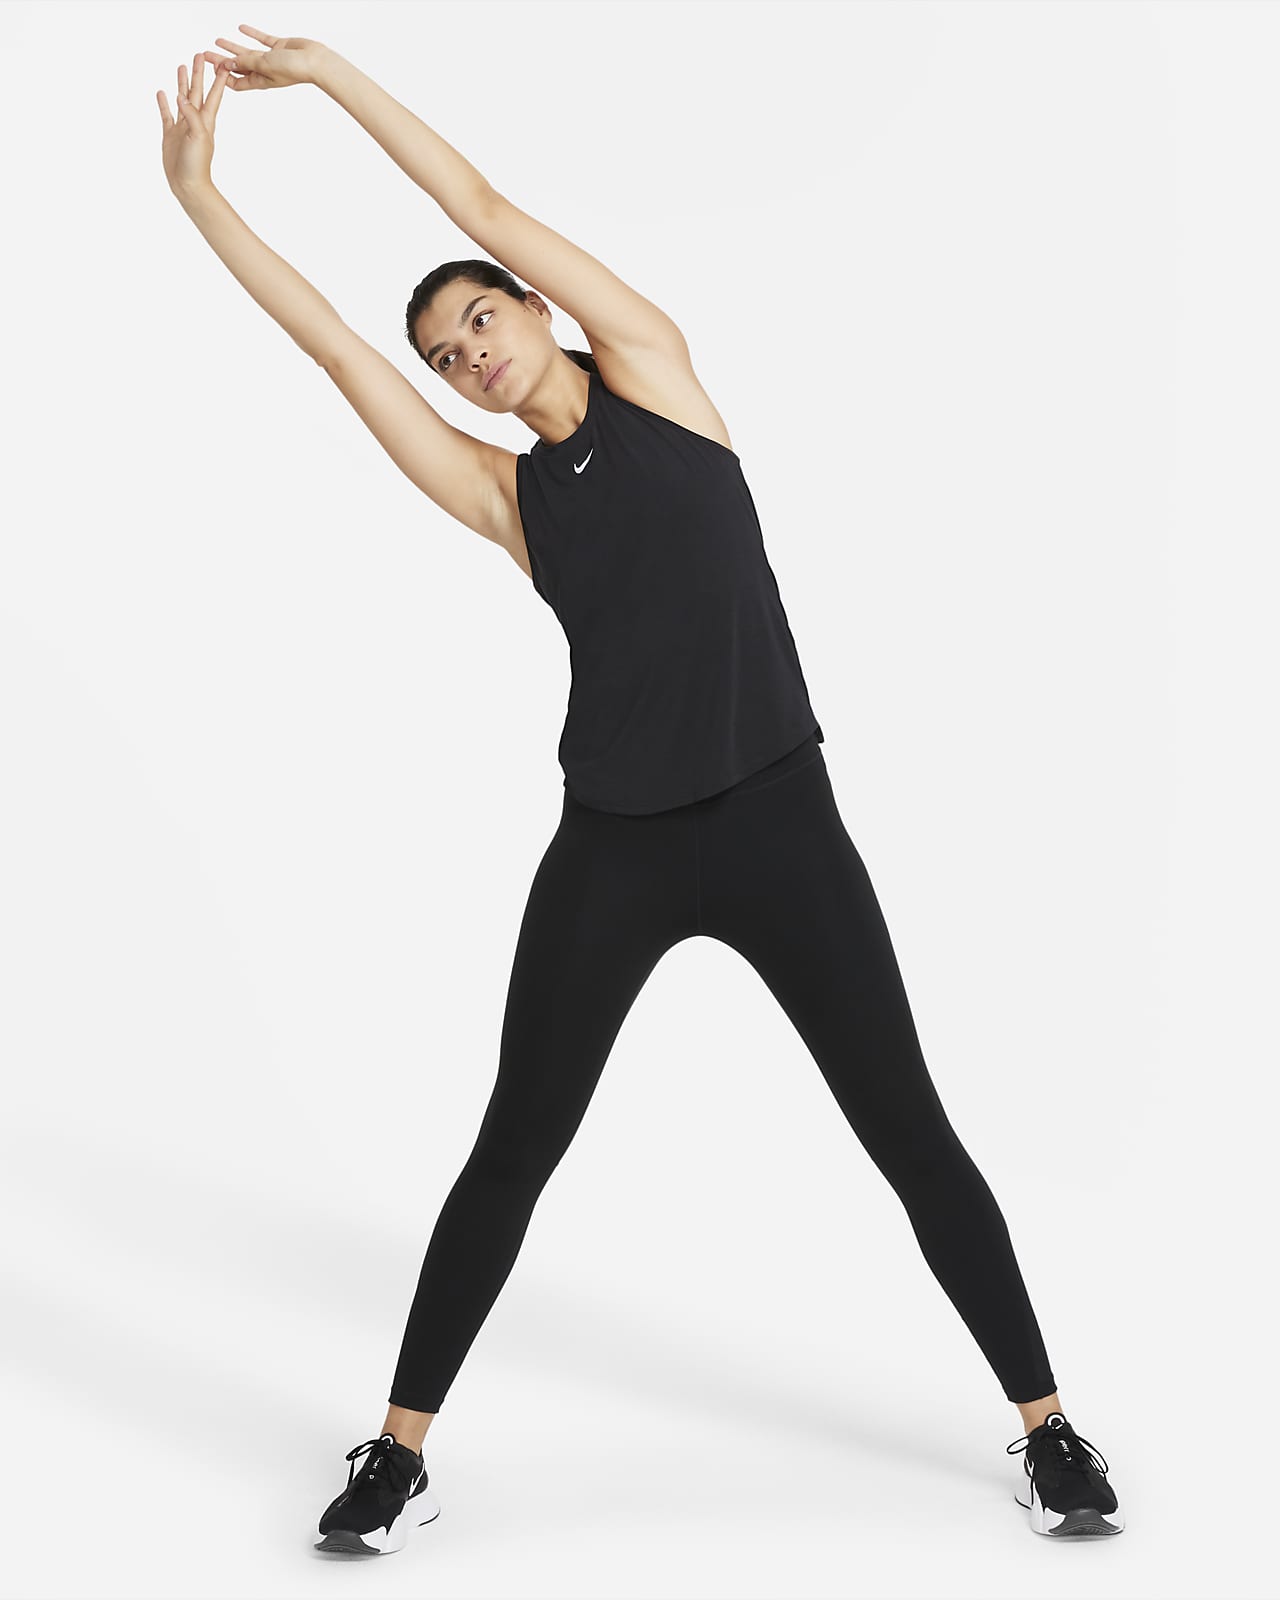 Nike Dri-FIT One Luxe Women's Standard Fit Tank Top